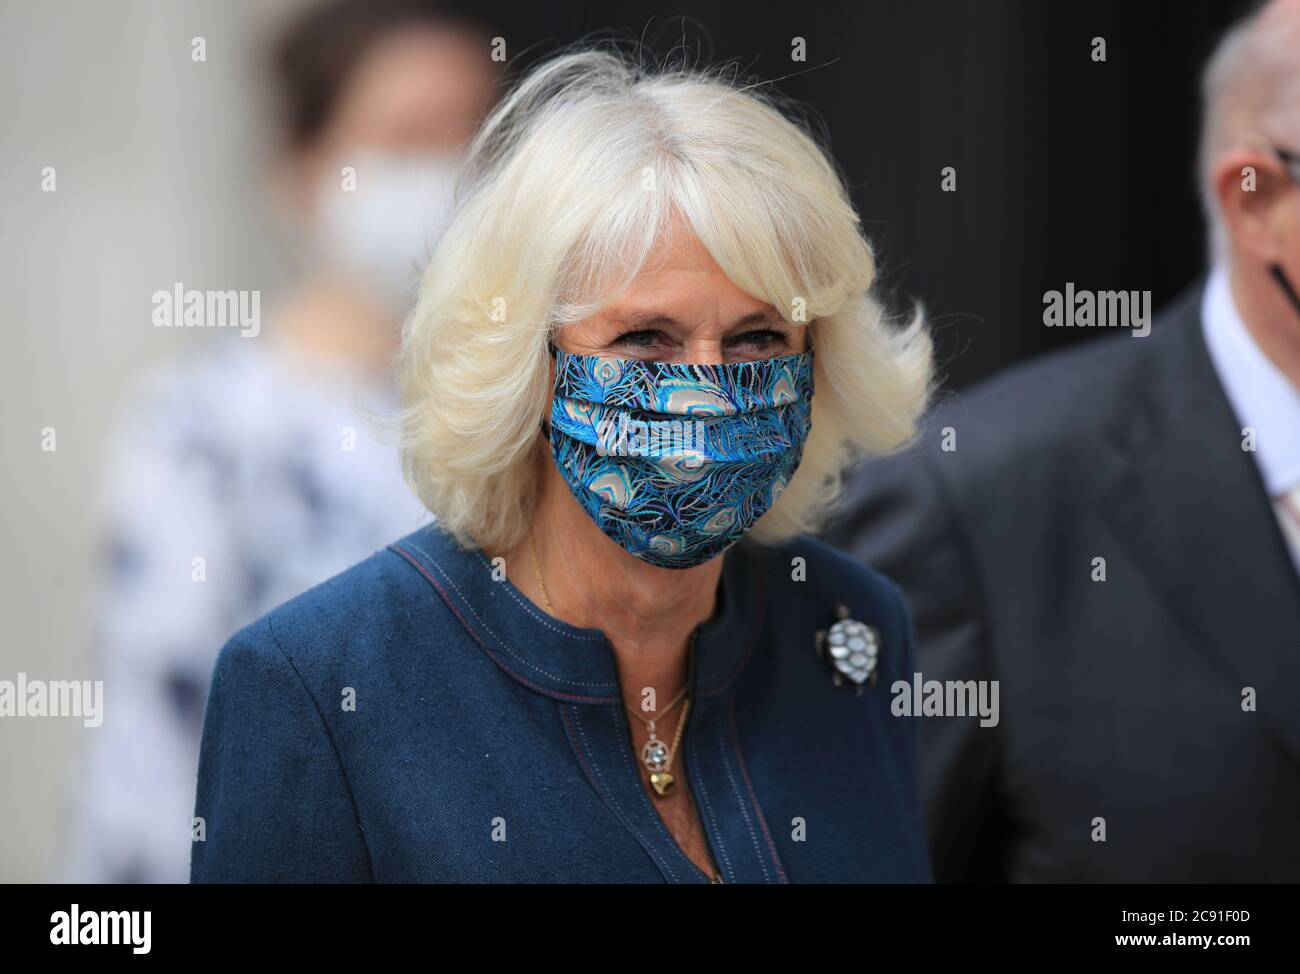 La duchesse de Cornwall portant un masque arrive à la National Gallery de Londres, récemment rouverte, pour rencontrer le personnel impliqué dans le processus de réponse et de réouverture de l'organisation Covid-19. Banque D'Images